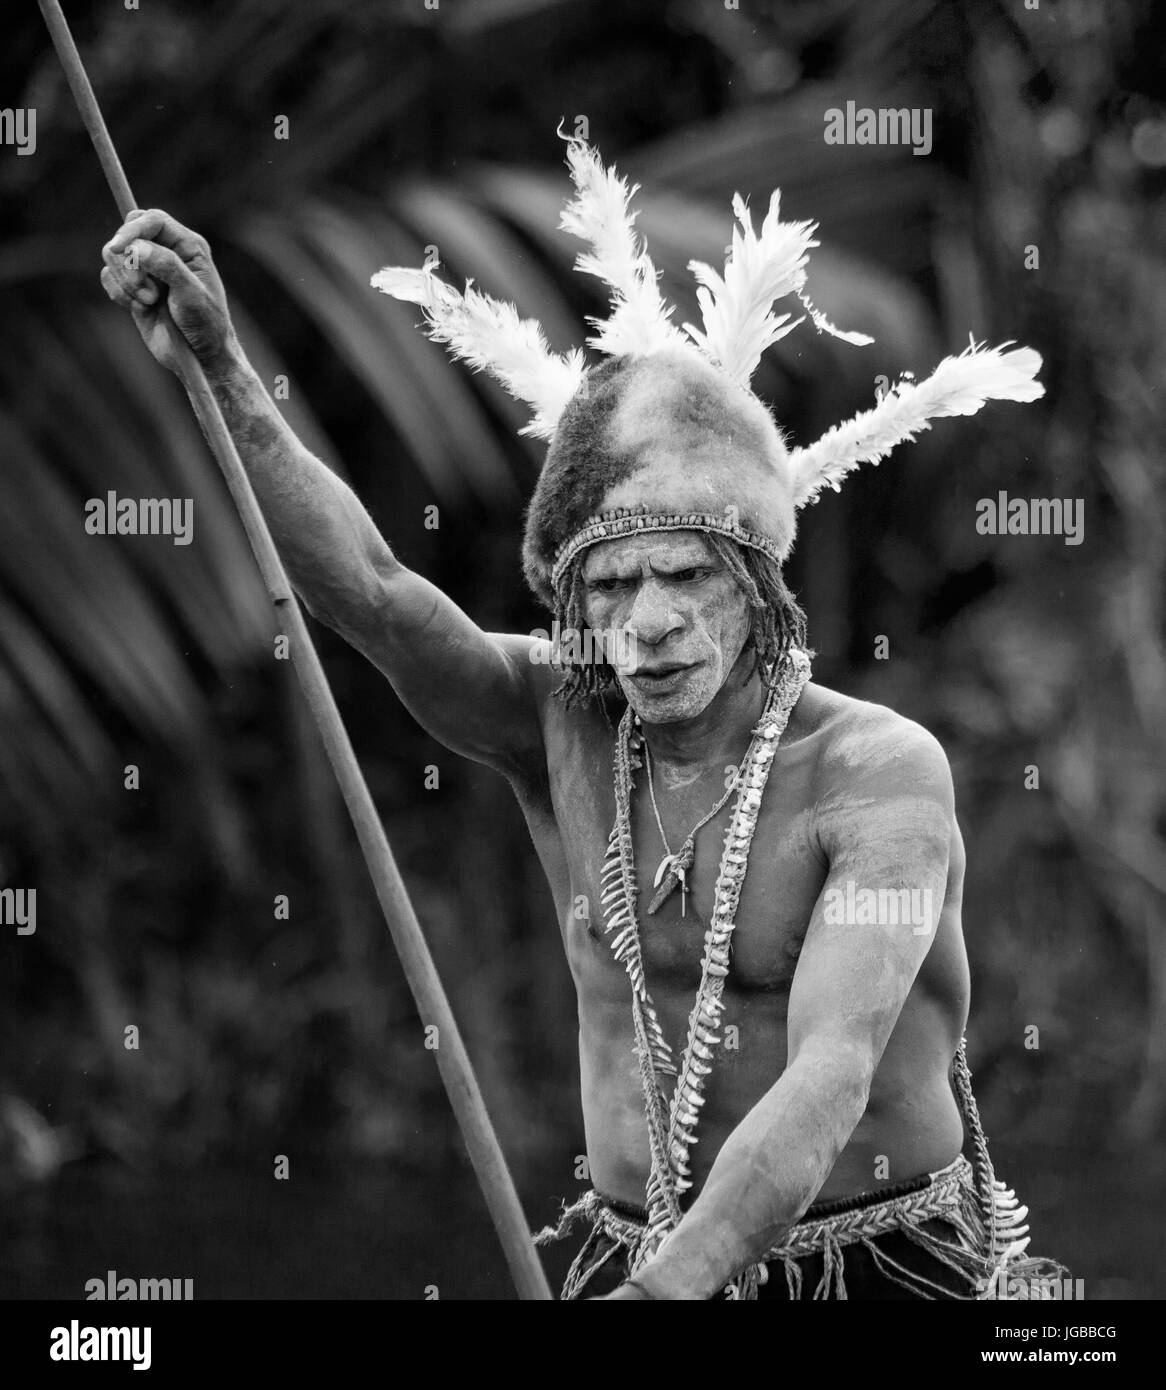 Indonesien, IRIAN JAYA, ASMAT Provinz, JOW Dorf - Juni 12: Porträt eines Kriegers Asmat-Stammes in traditionelle Kopfbedeckung. Stockfoto